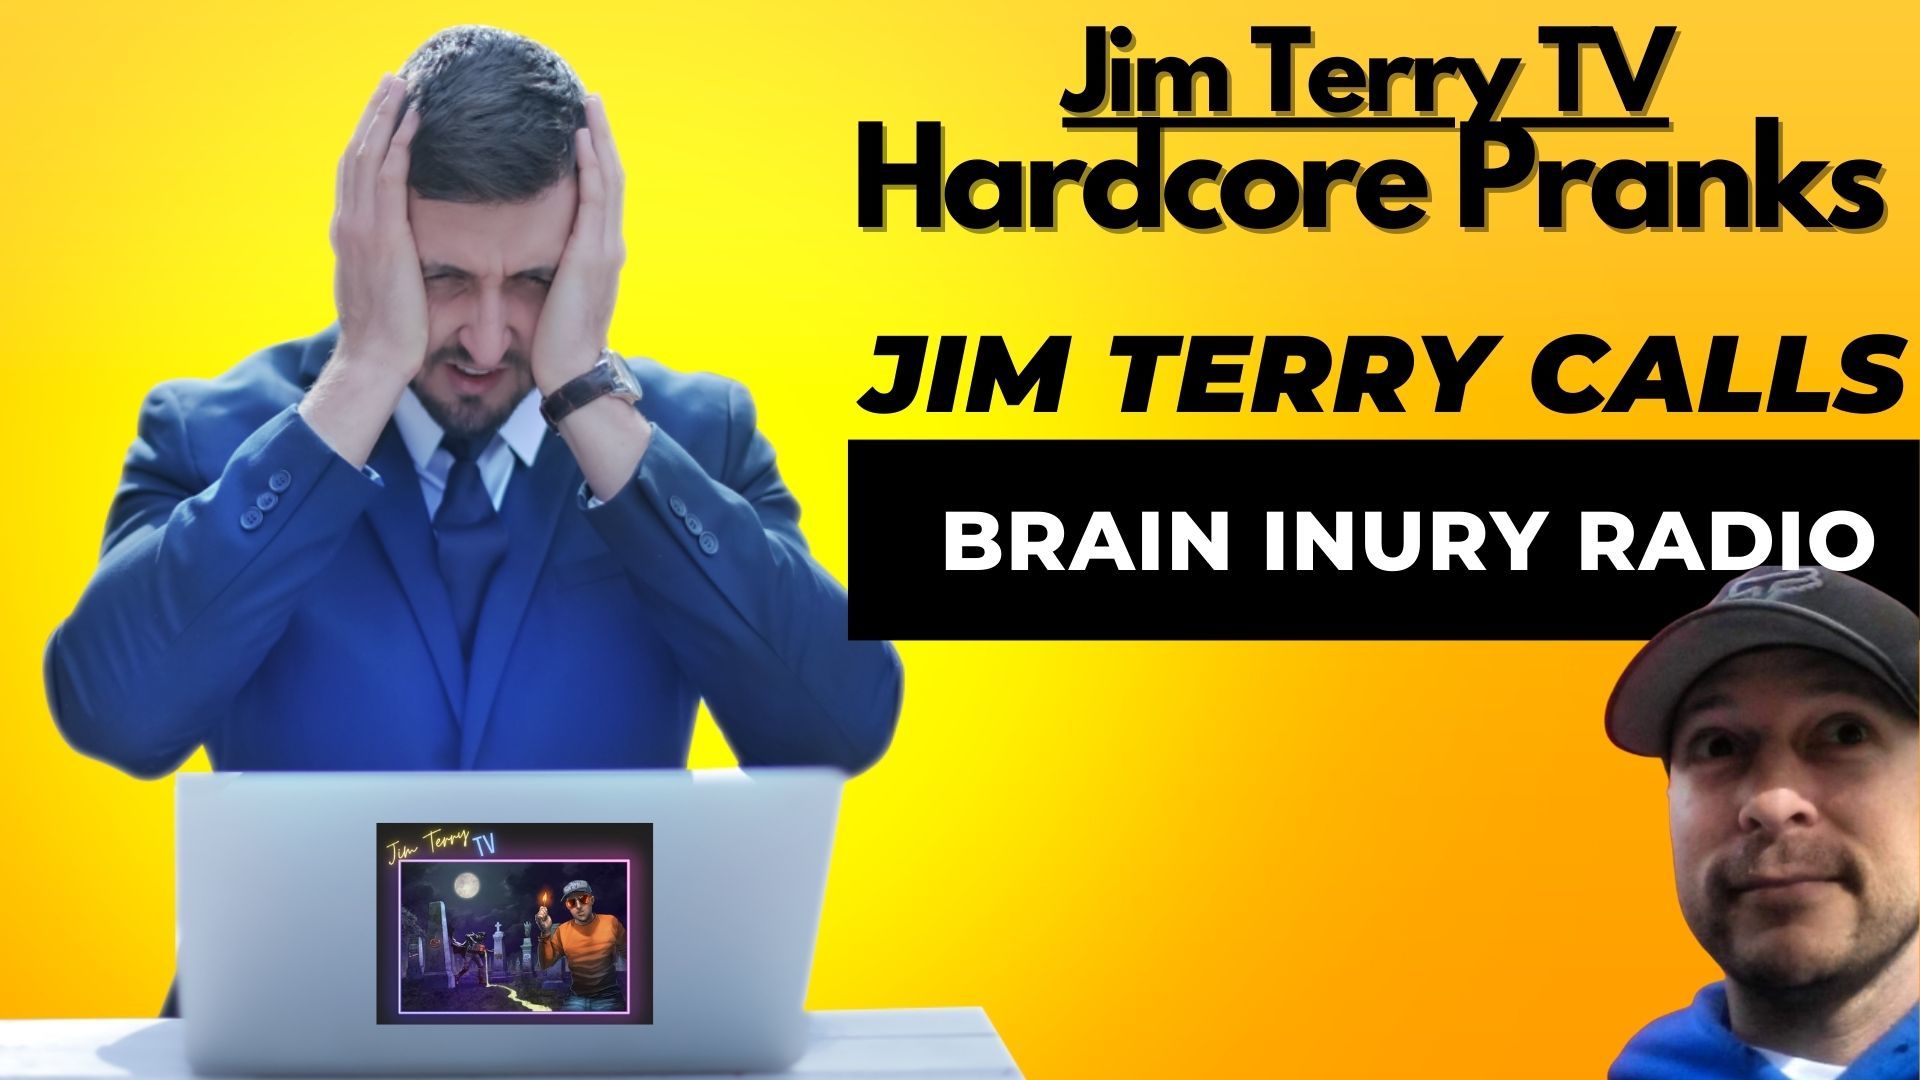 #2 "Brain Injury Radio"